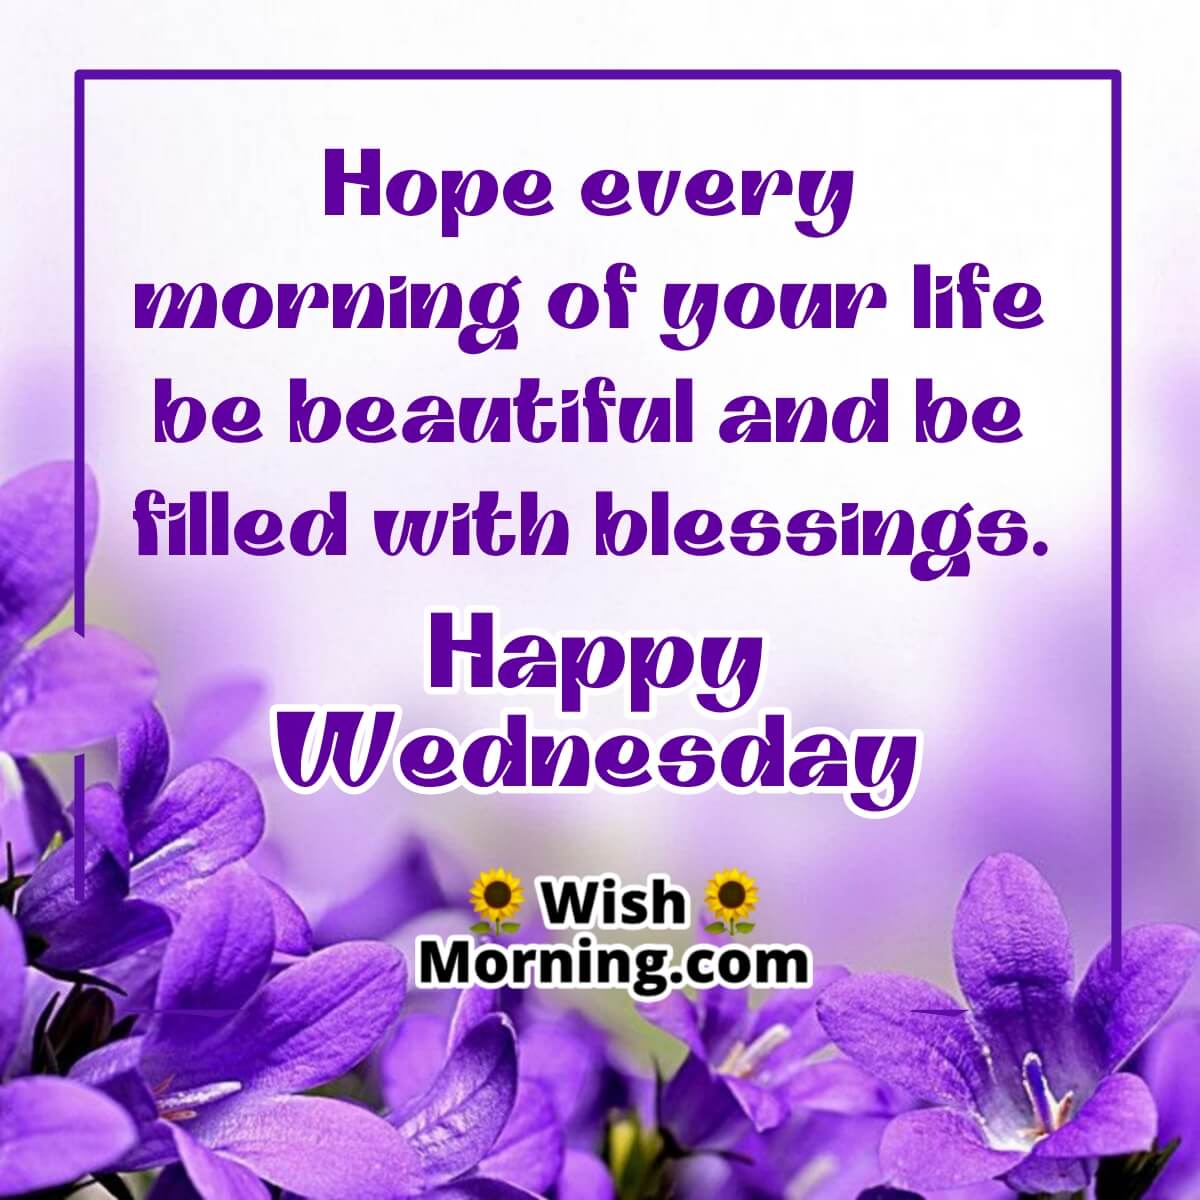 Wednesday Morning Wishes - Wish Morning